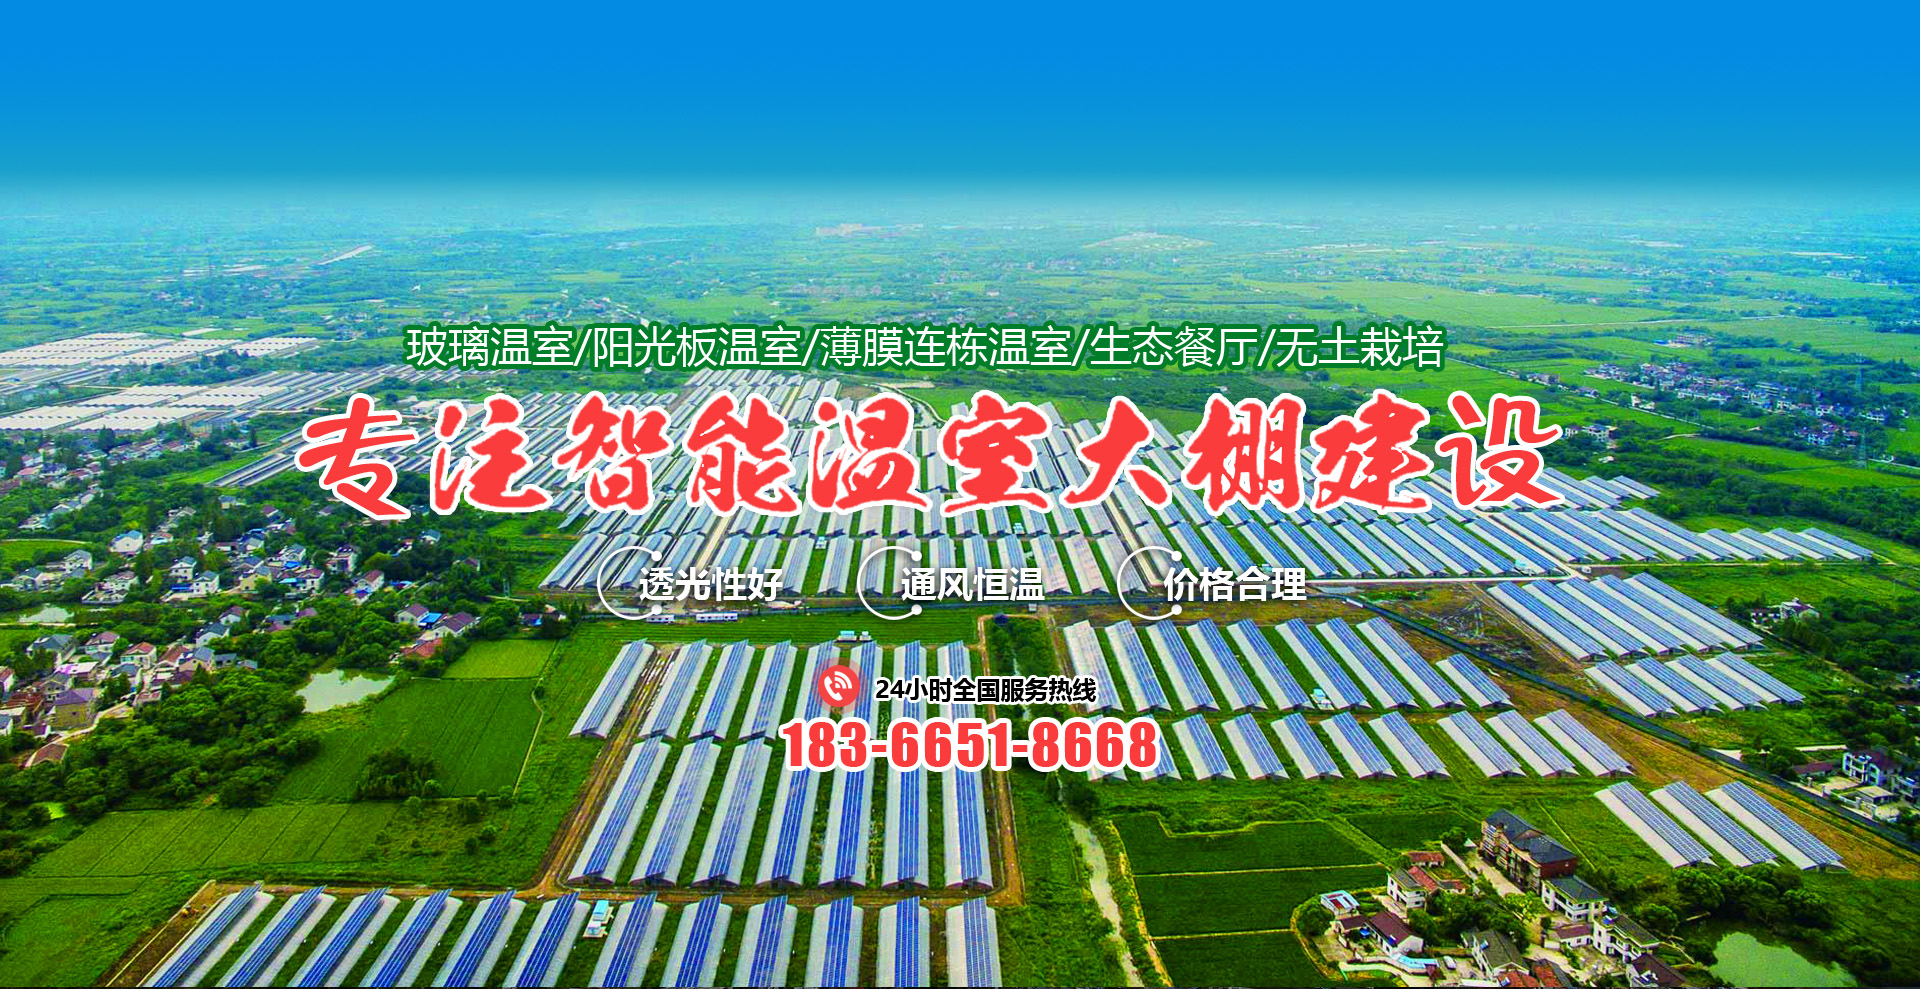 青州市中科润泽农业科技发展有限公司